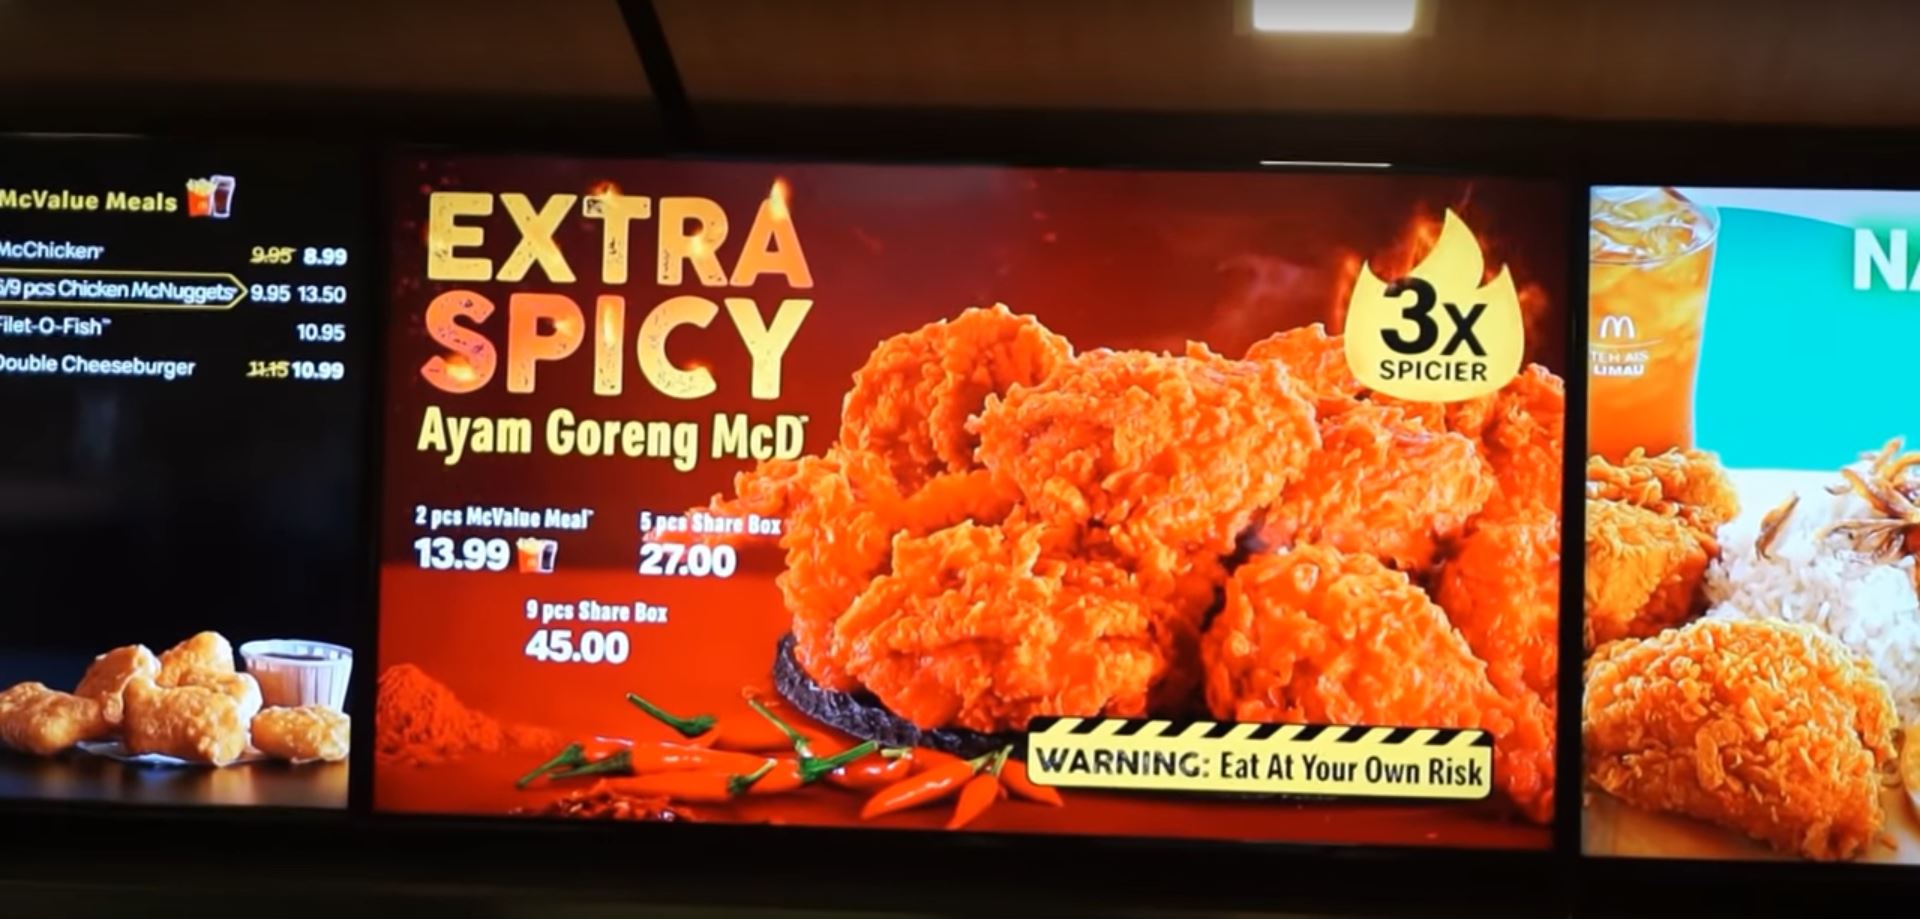 ayam goreng mcd price 2018